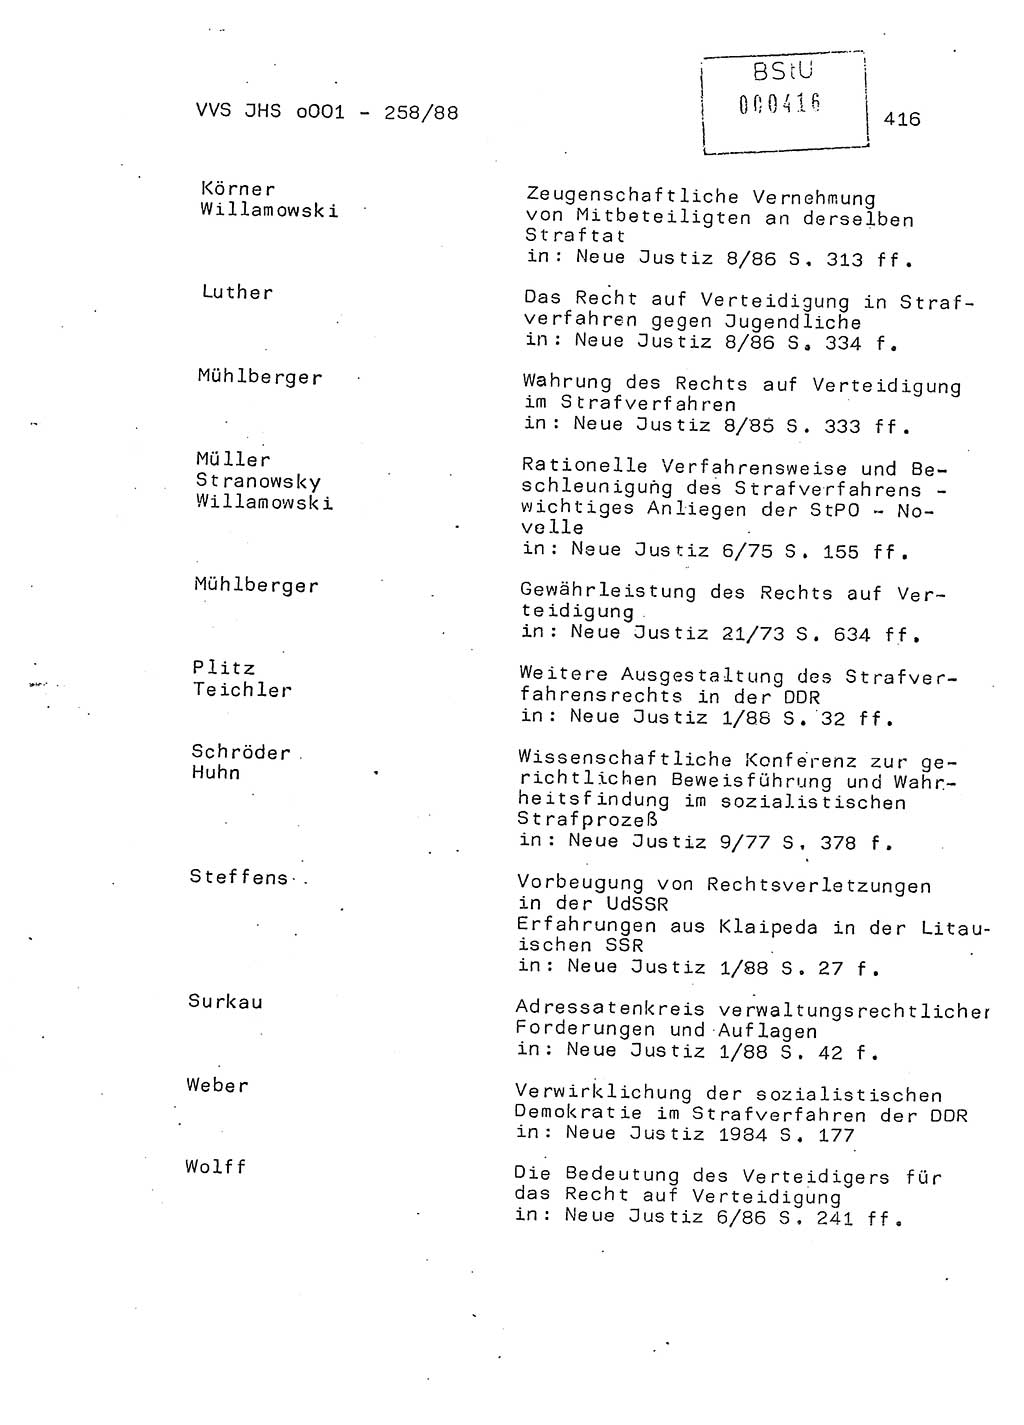 Dissertation, Oberleutnant Uwe Kärsten (JHS), Hauptmann Dr. Joachim Henkel (JHS), Oberstleutnant Werner Mählitz (Leiter der Abt. Ⅸ BV Rostock), Oberstleutnant Jürgen Tröge (HA Ⅸ/AKG), Oberstleutnant Winfried Ziegler (HA Ⅸ/9), Major Wolf-Rüdiger Wurzler (JHS), Ministerium für Staatssicherheit (MfS) [Deutsche Demokratische Republik (DDR)], Juristische Hochschule (JHS), Vertrauliche Verschlußsache (VVS) o001-258/88, Potsdam 1988, Seite 415 (Diss. MfS DDR JHS VVS o001-258/88 1988, S. 415)